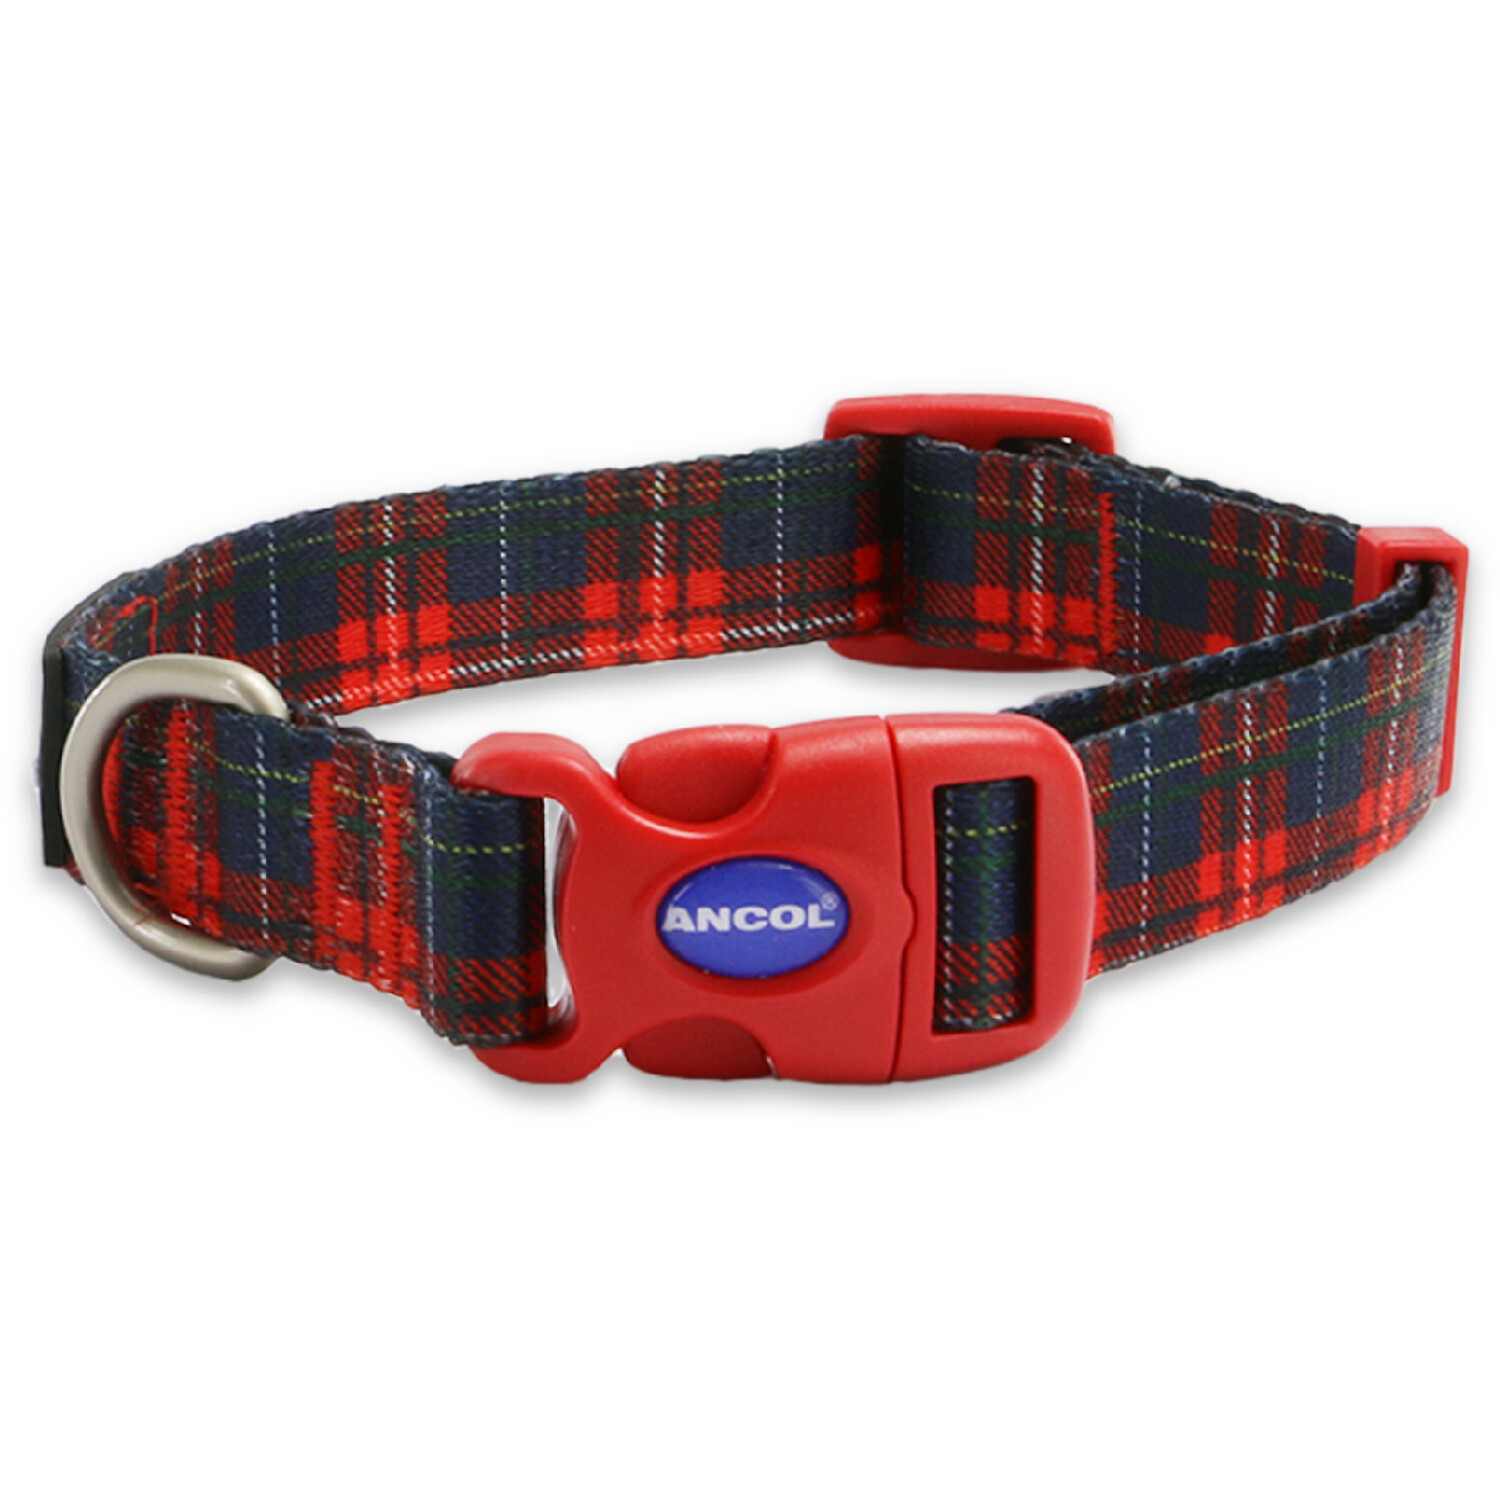 Tartan Patterned Dog Collar - Red / 30 - 50cm Neck Image